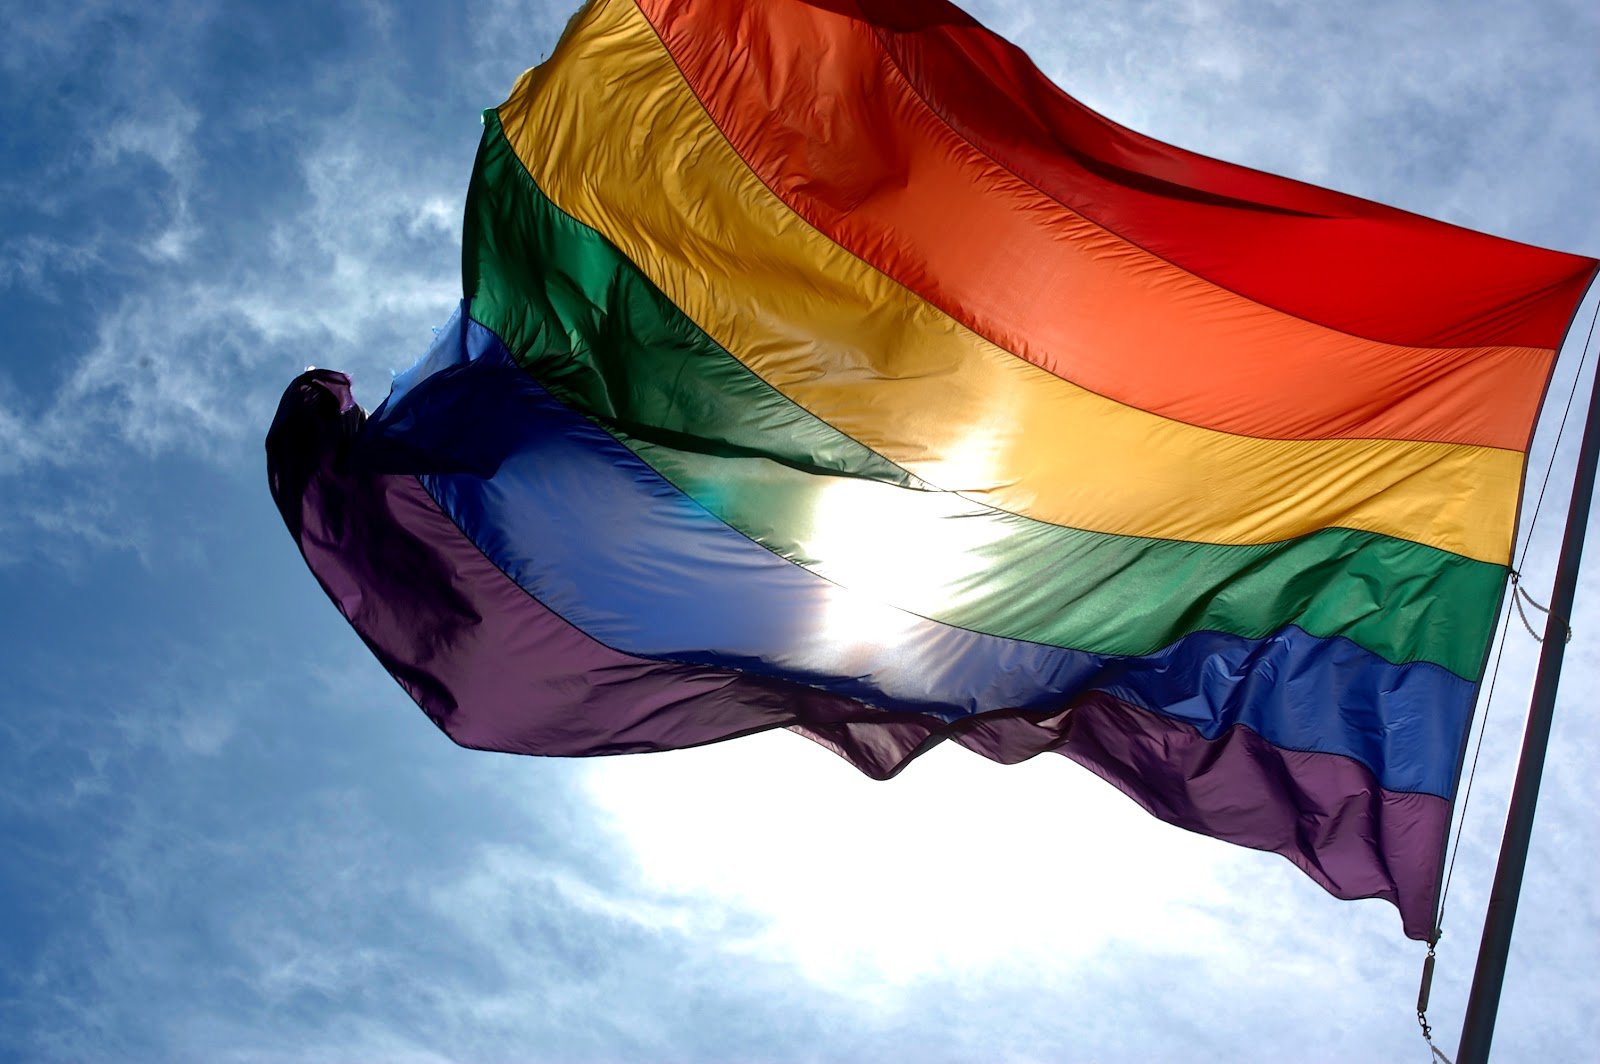 Ιταλία: Tου πήραν το δίπλωμα επειδή ήταν ομοφυλόφιλος